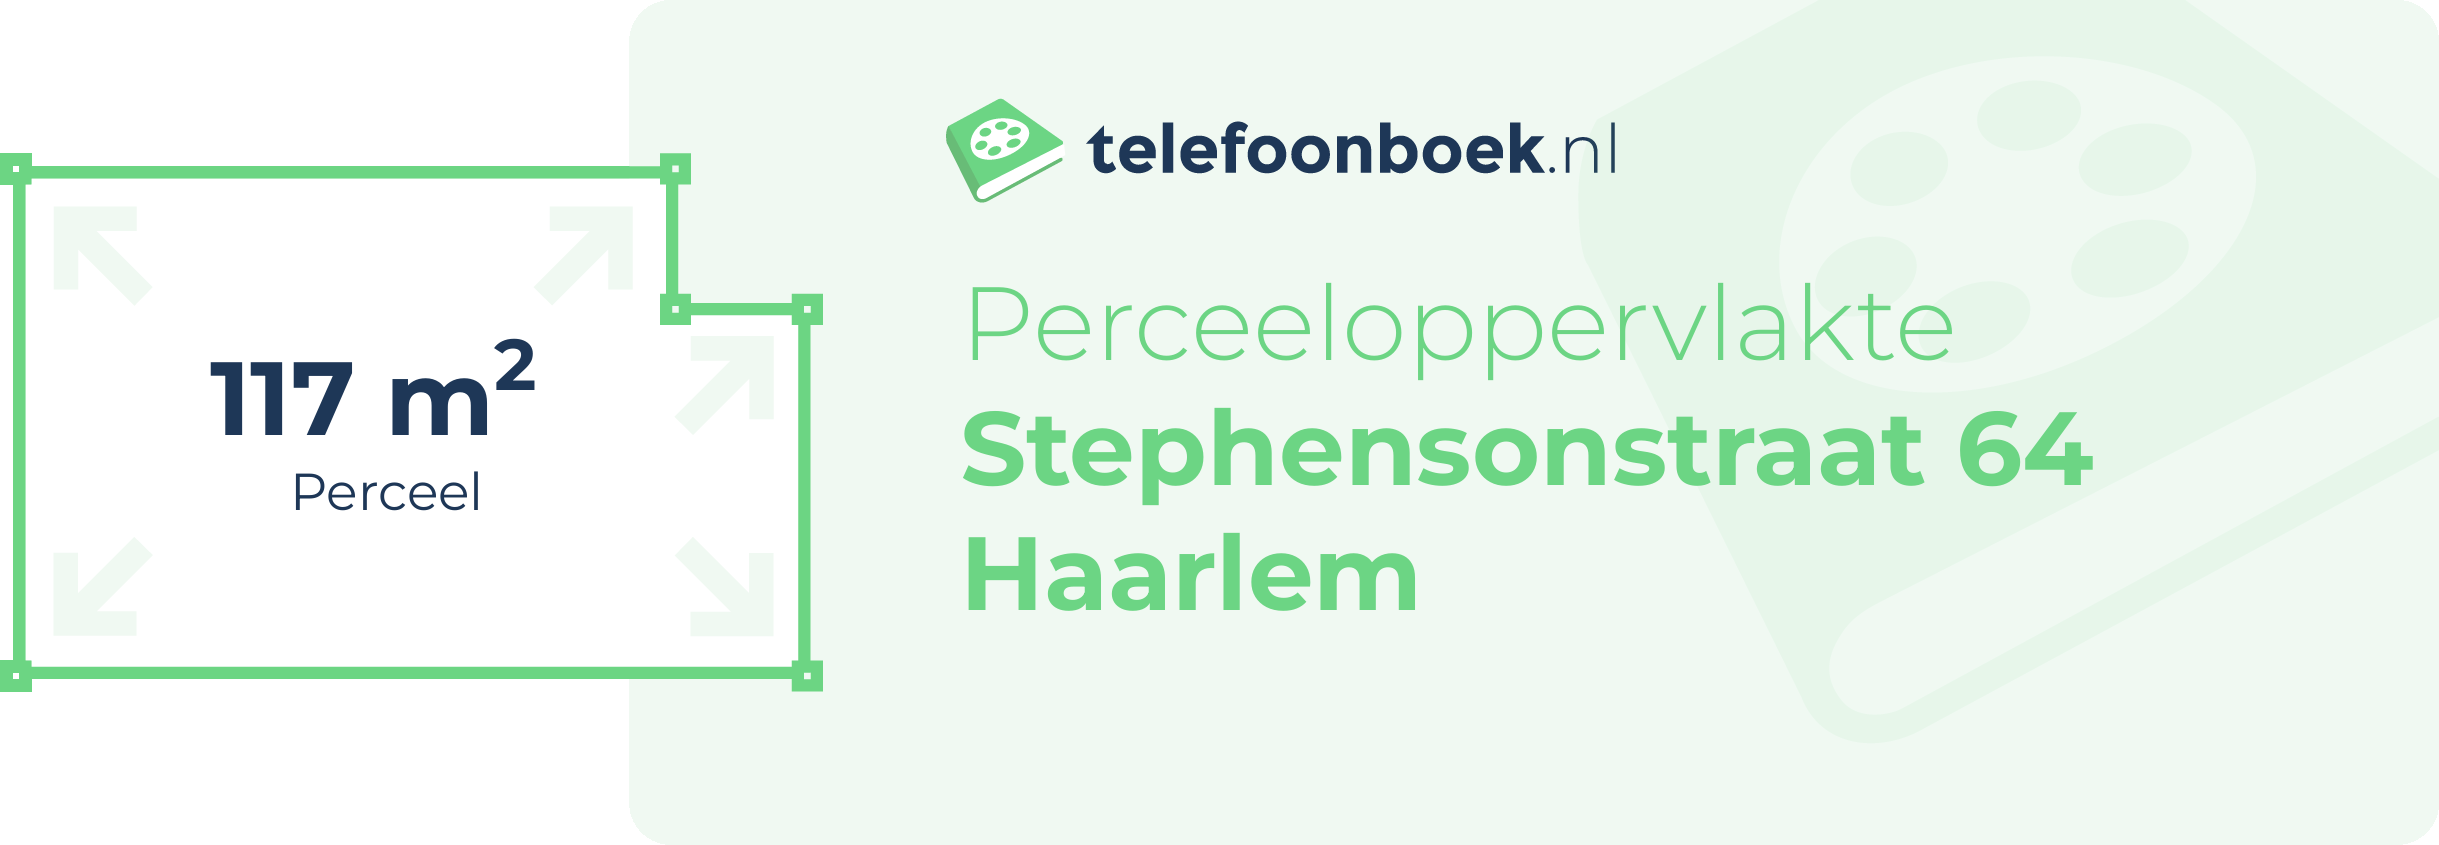 Perceeloppervlakte Stephensonstraat 64 Haarlem